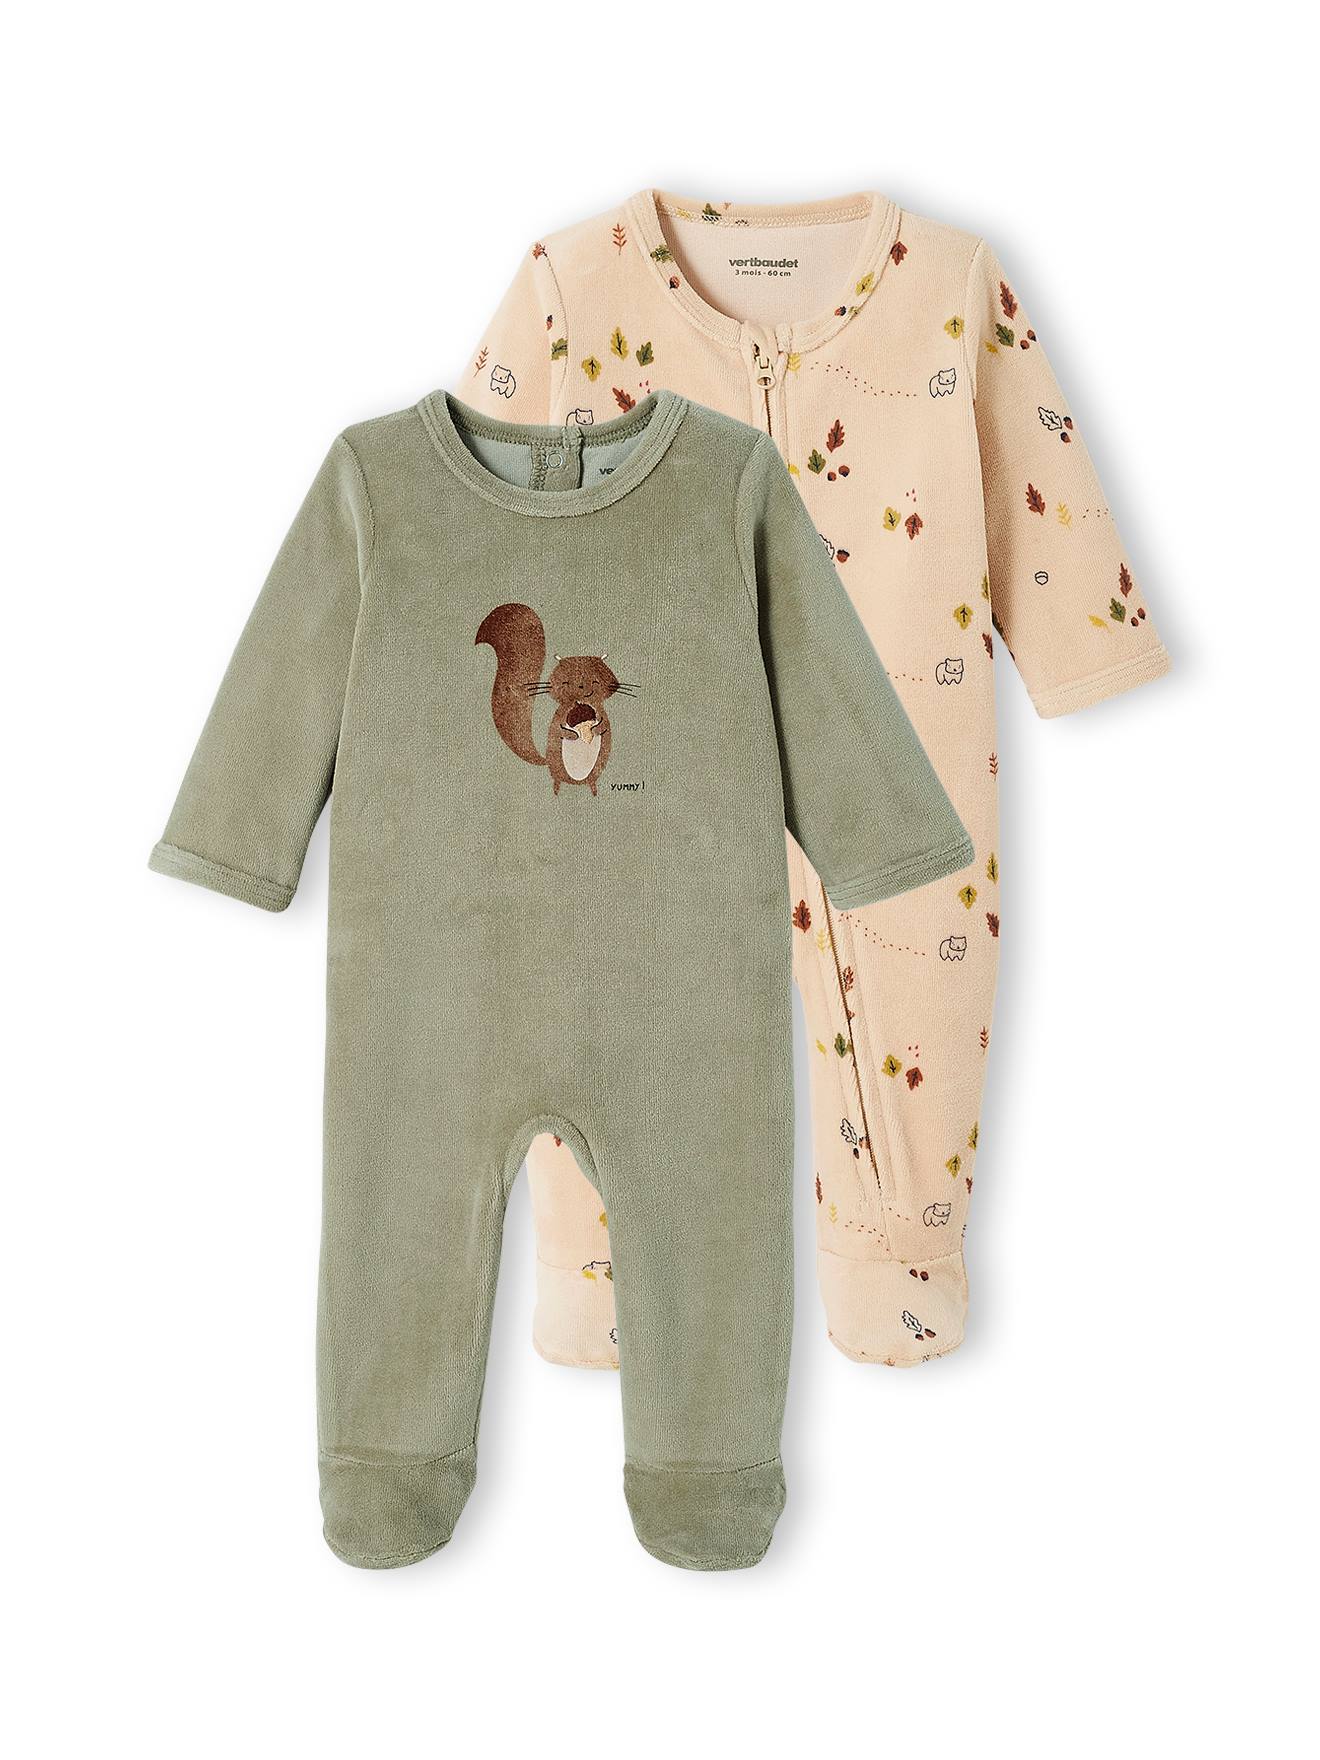 Jungen 3-6 Monate Lictin Strampler Baby Strampler Babykleidung Strampler Junge Schlafstrampler Baumwolle mit Baby Mütze für Neugeborene 0-3 Monate 